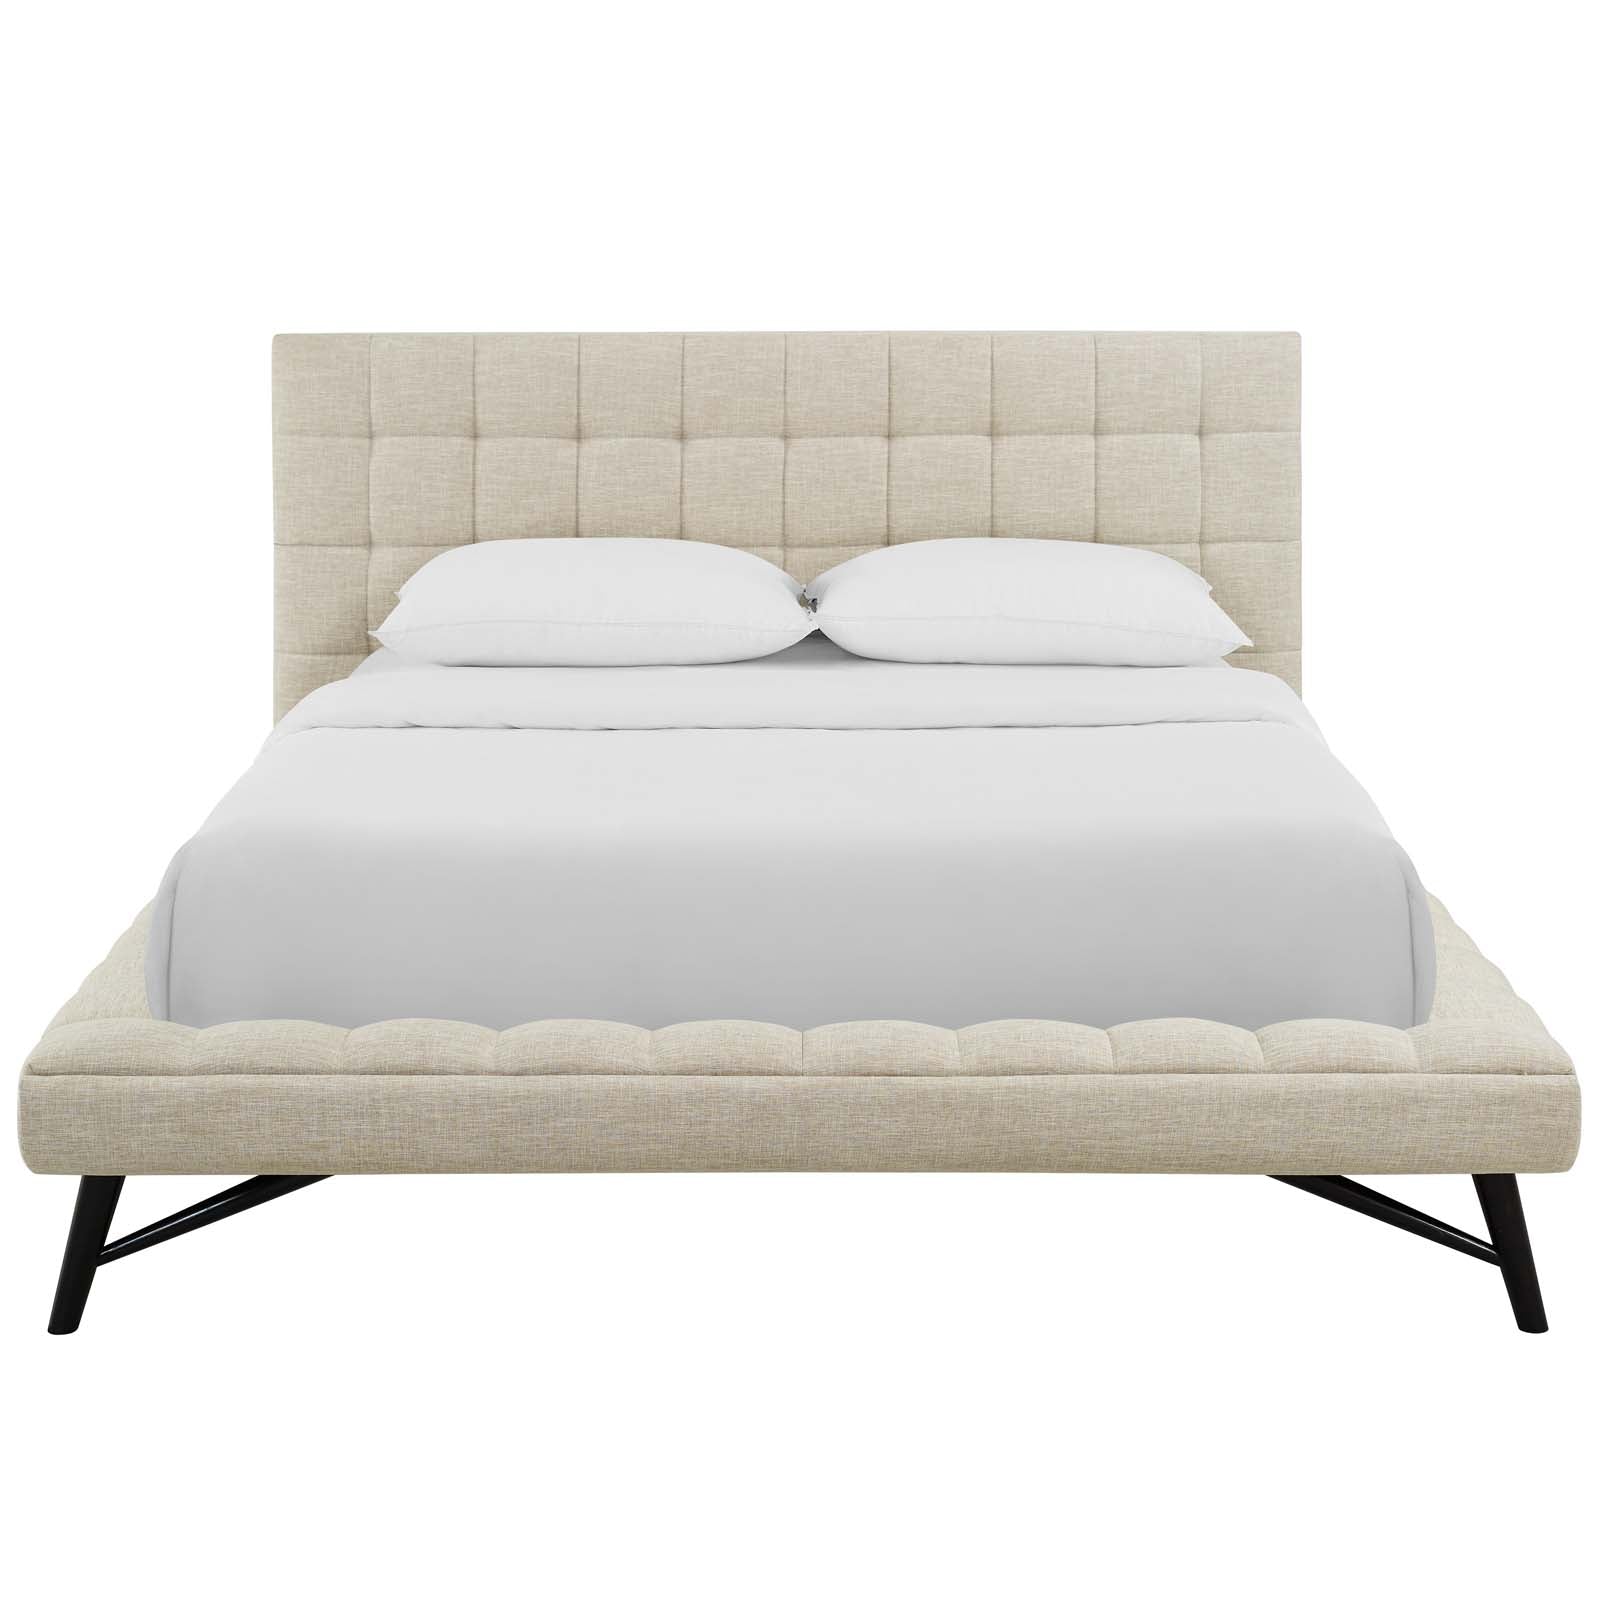 Modway Beds - Julia Biscuit Tufted Queen Bed Beige